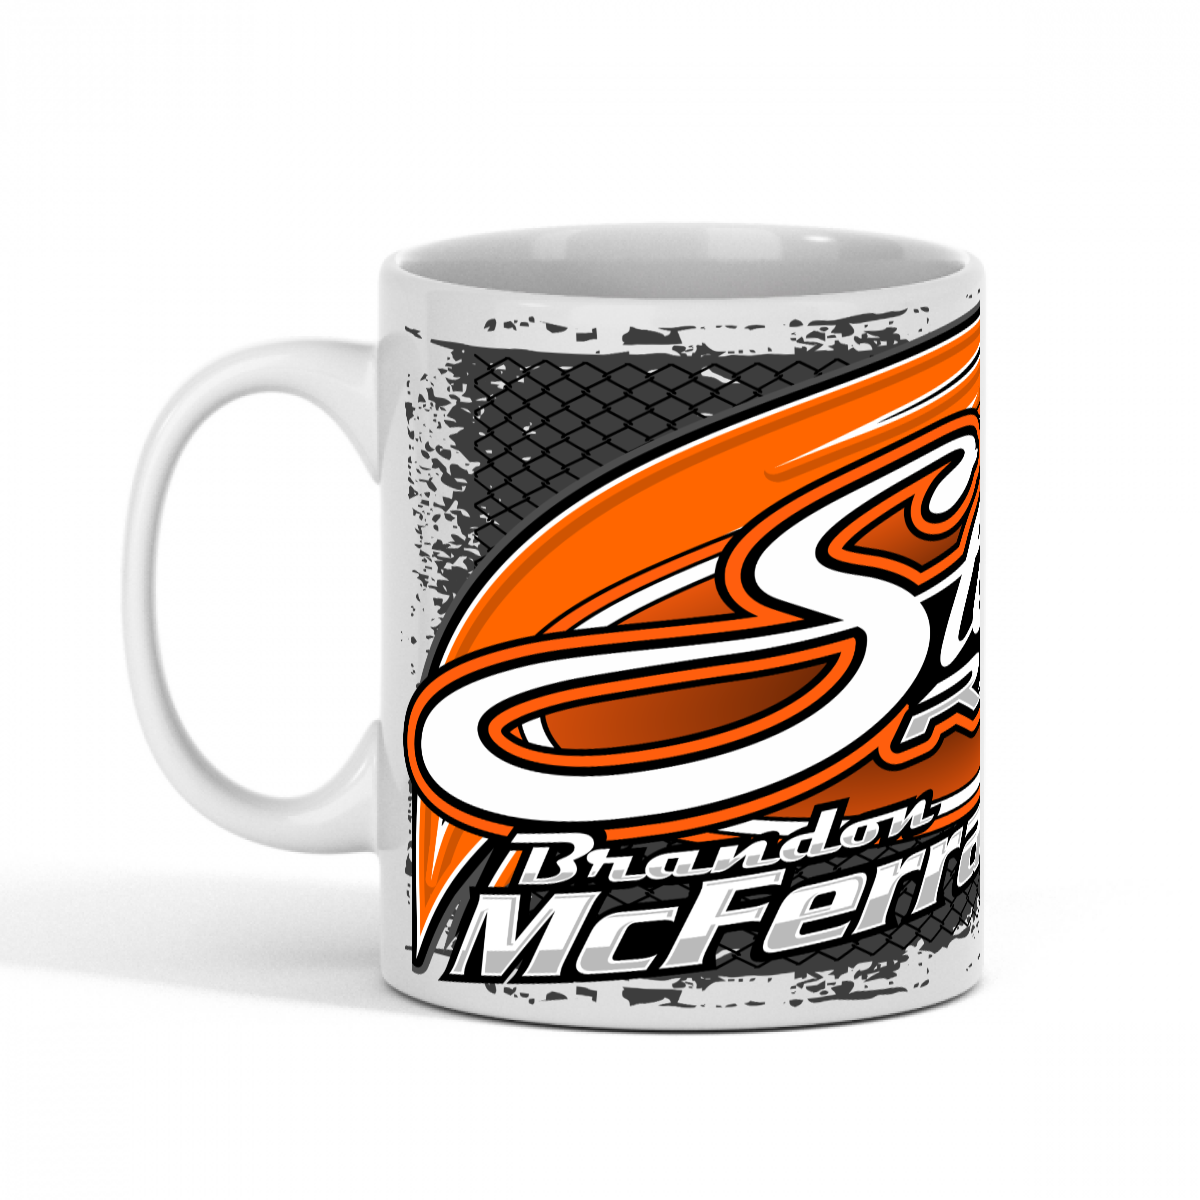 Stewart's Racing Brandon McFerran 56 coffee mug